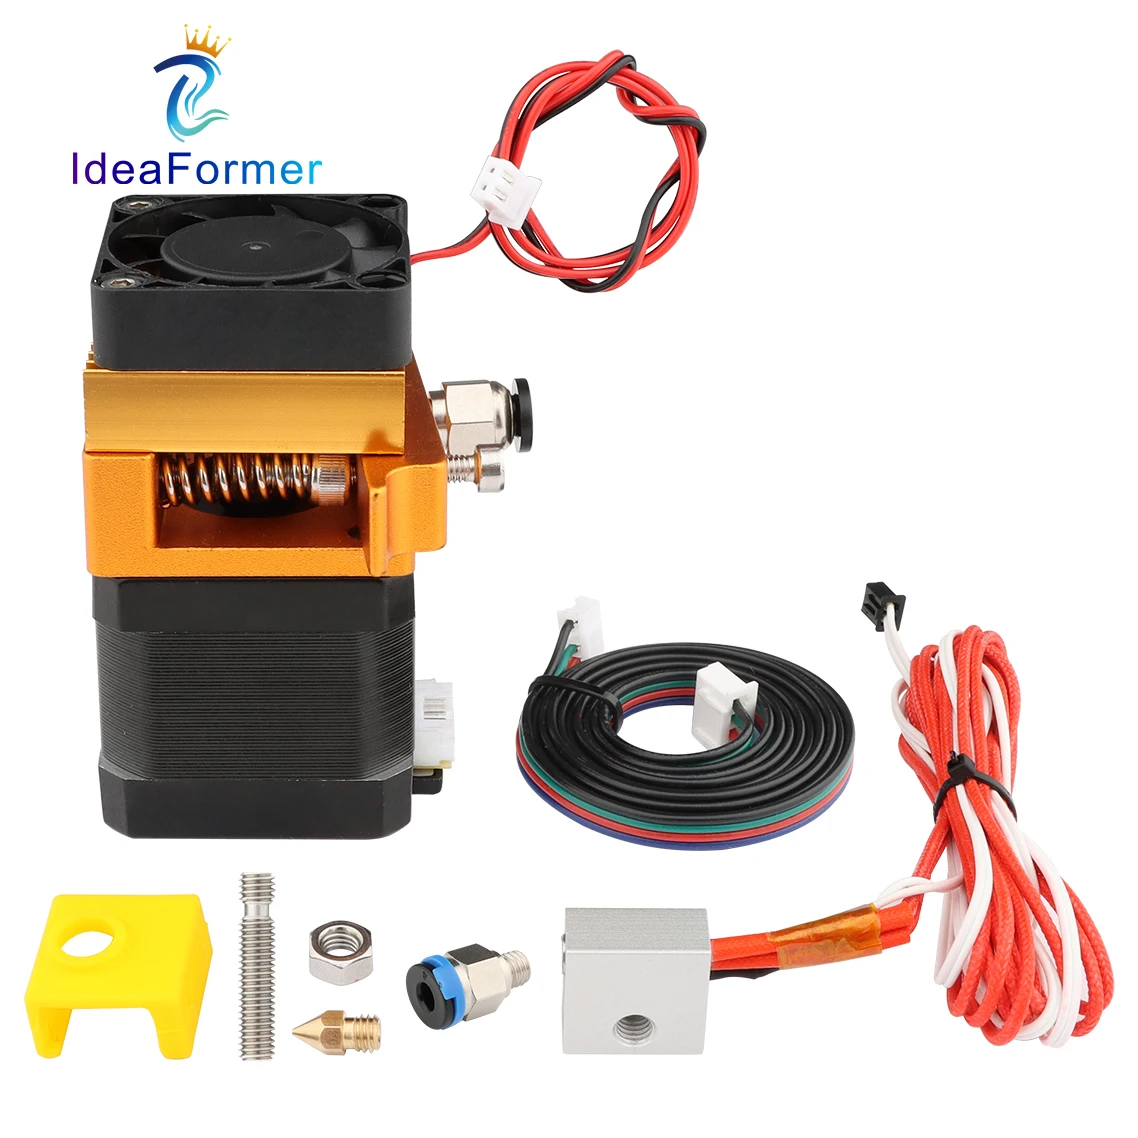 Kit de buse d'imprimante 3D Kit Mk8 Hotend Kit compatible avec Alfawise U20  U30 Creality Ender 3 assemblé Mk8 Extruder Kit d'extrémité chaude avec buse  de 0,4 mm, 24V 40W [